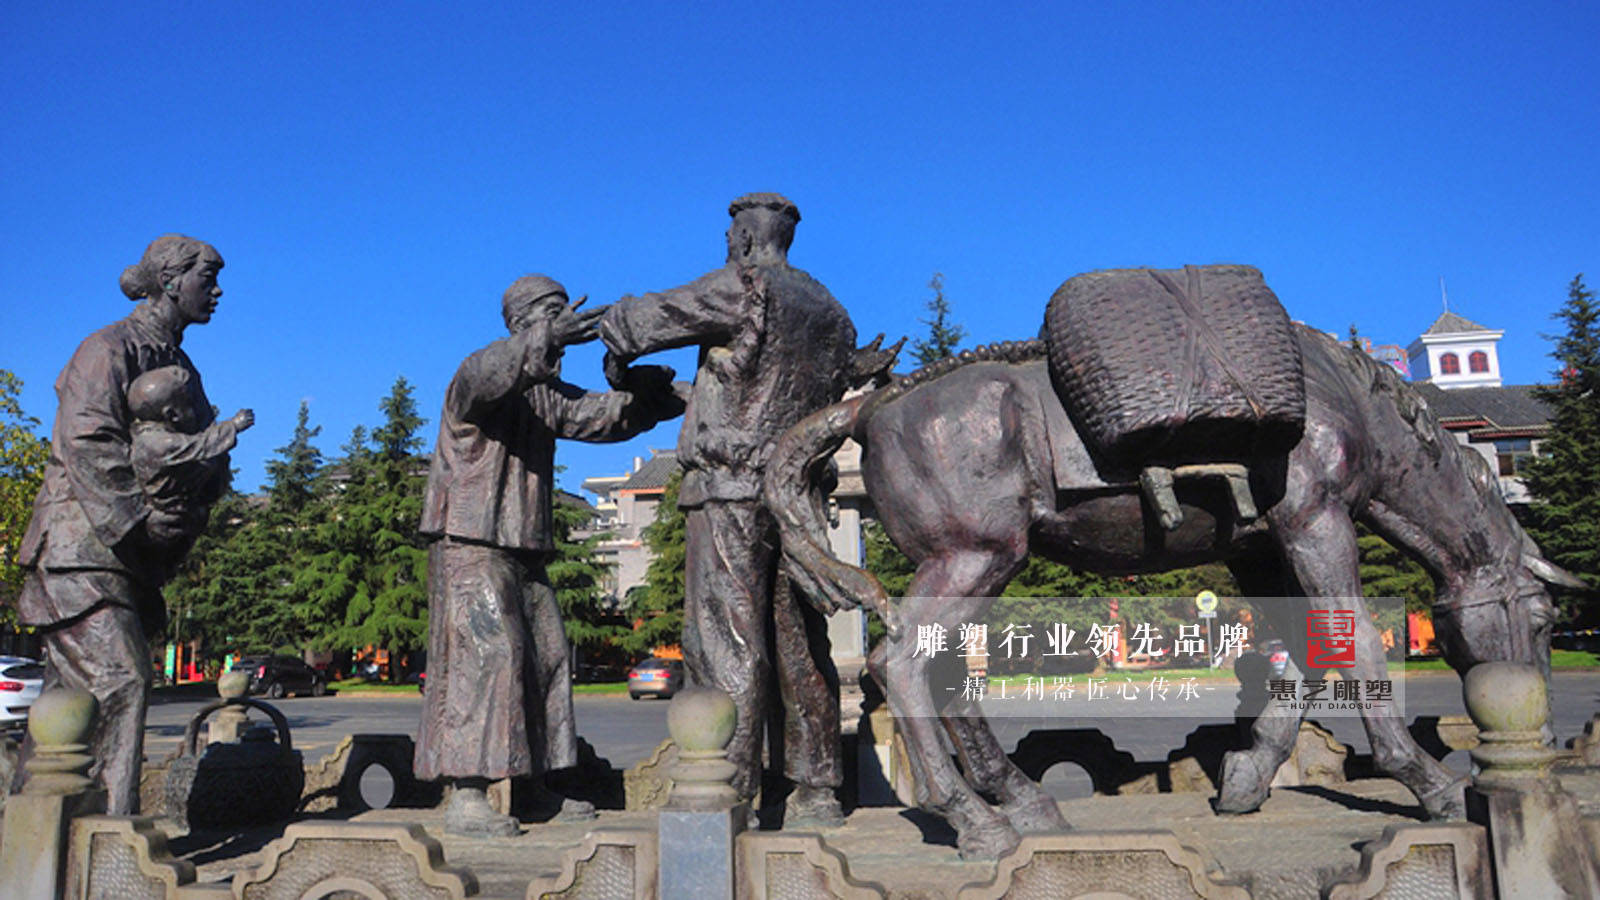 茶马古道雕塑——承载了千年的茶文化,带着马帮精神,让人品读岁月的陈